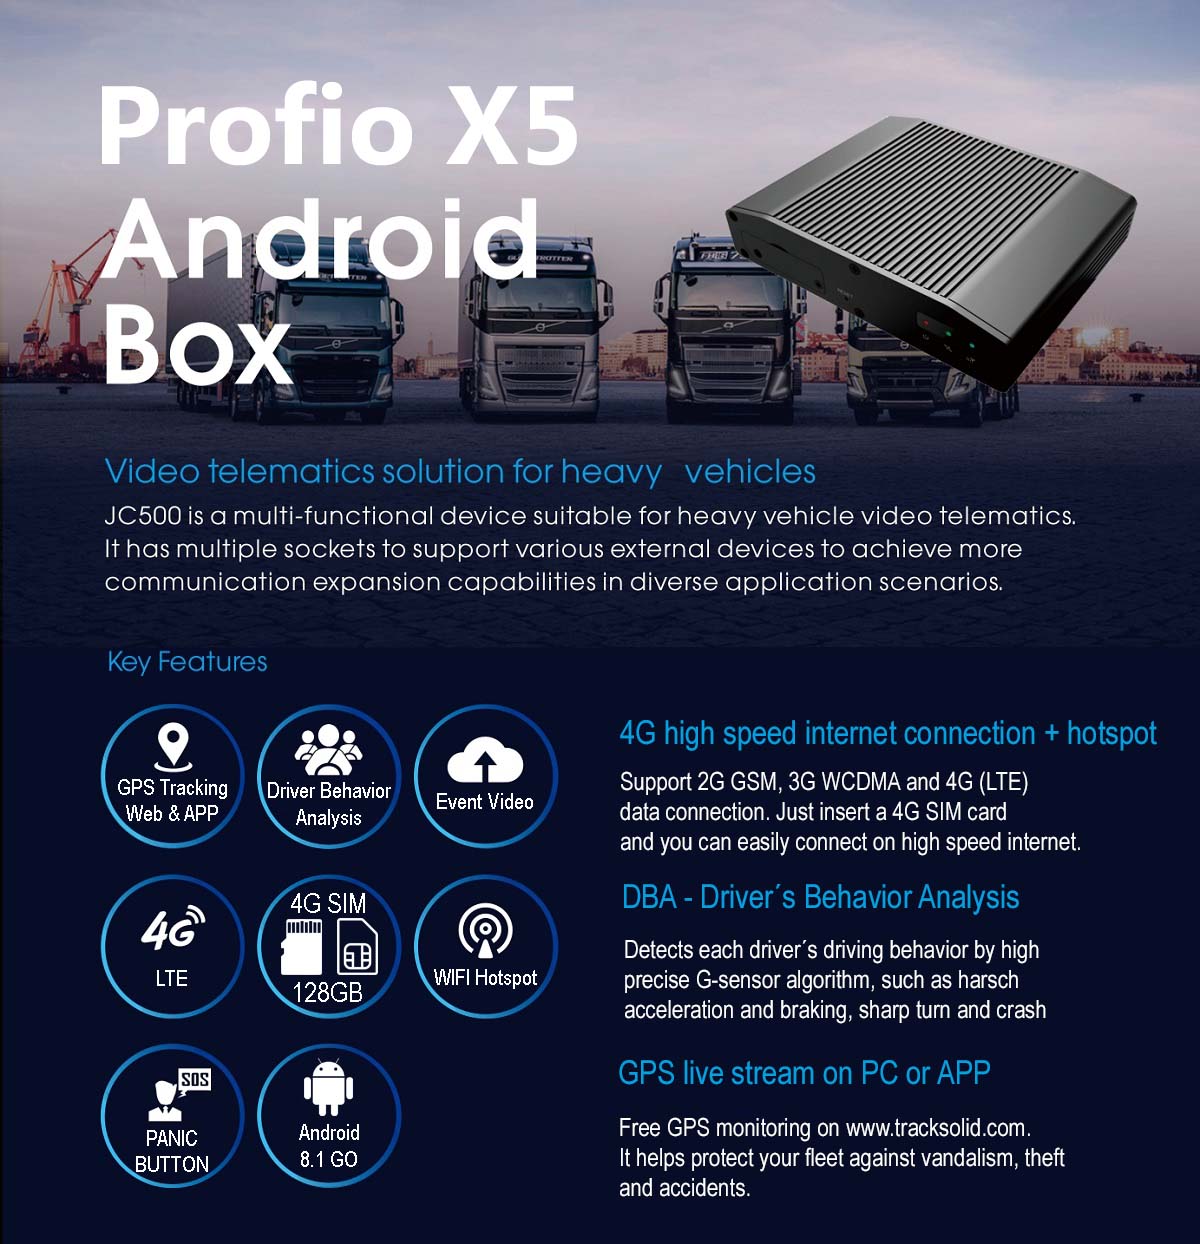 4G araç içi kamera lte canlı izleme - Profio X5